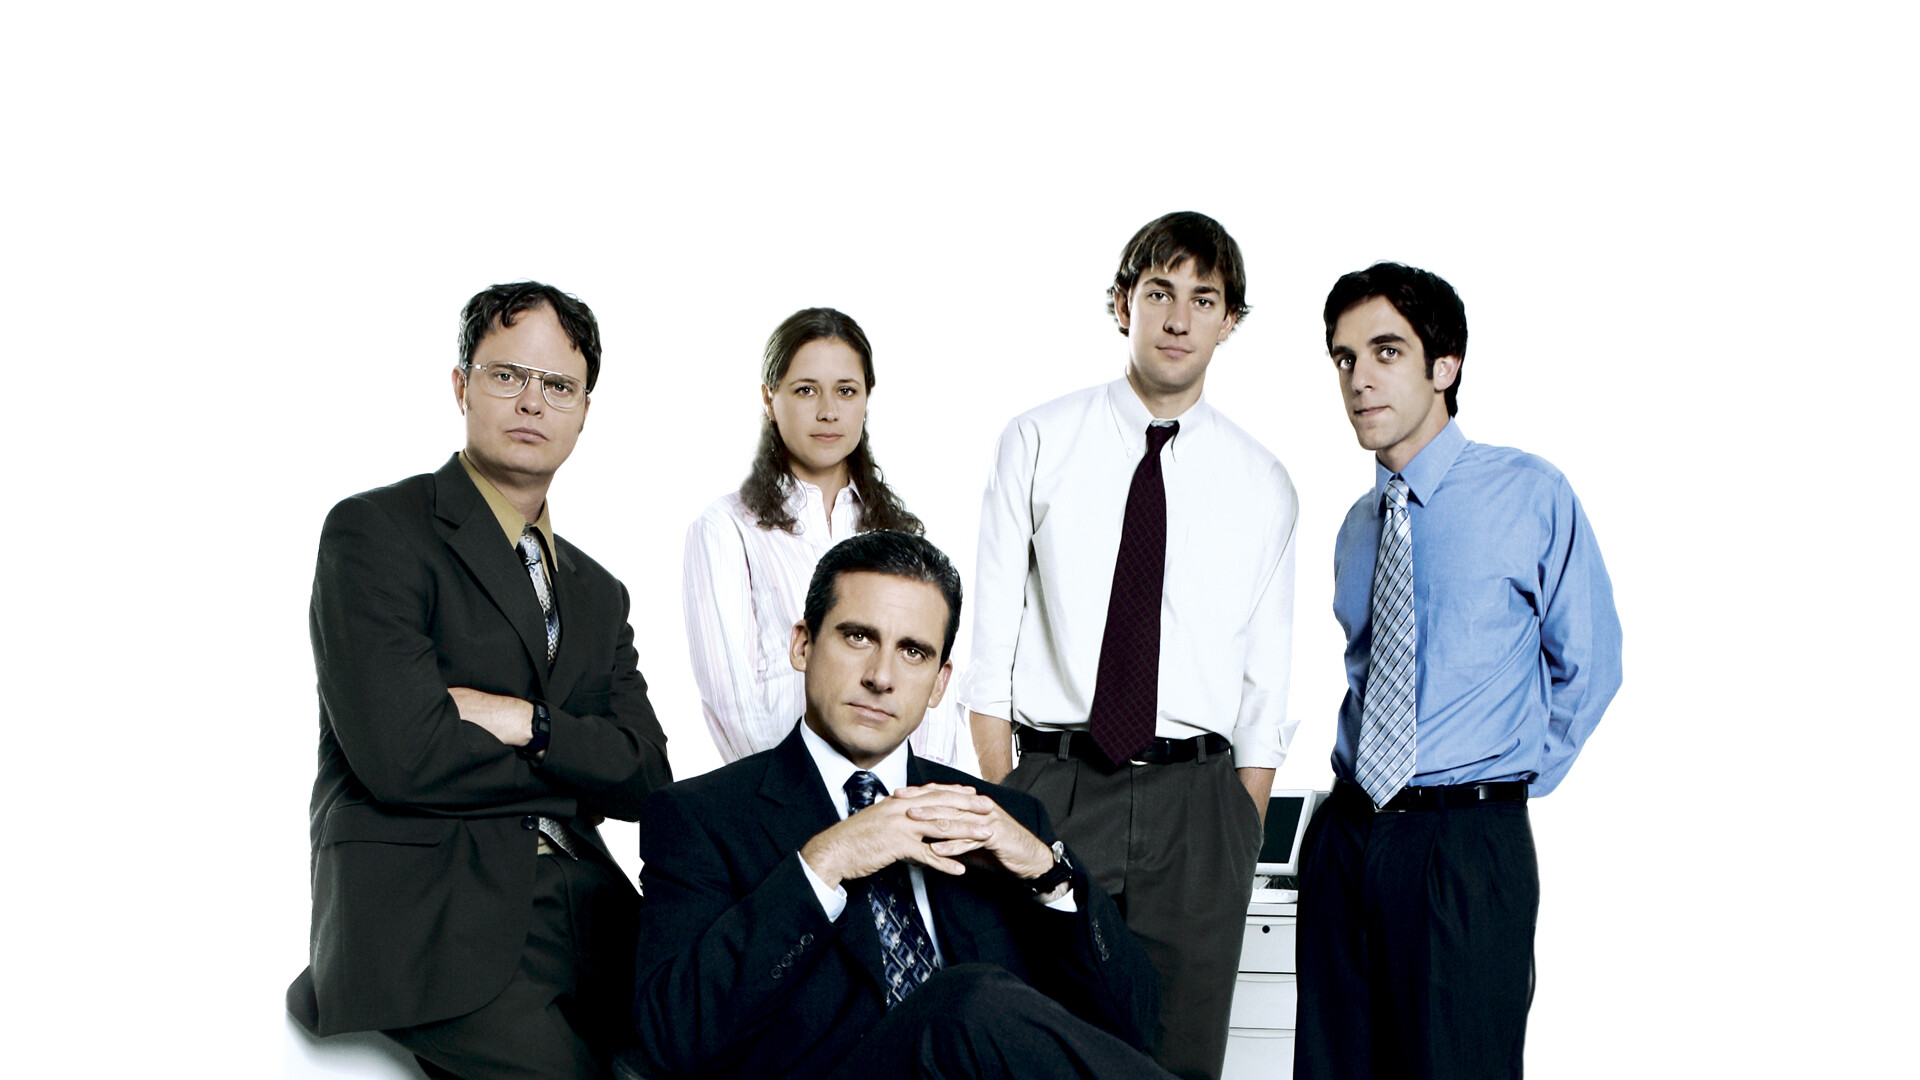 The Office (TV Series): The show featured Steve Carell, Rainn Wilson, John Krasinski, Jenna Fischer, and B. J. Novak as the main cast. 1920x1080 Full HD Background.